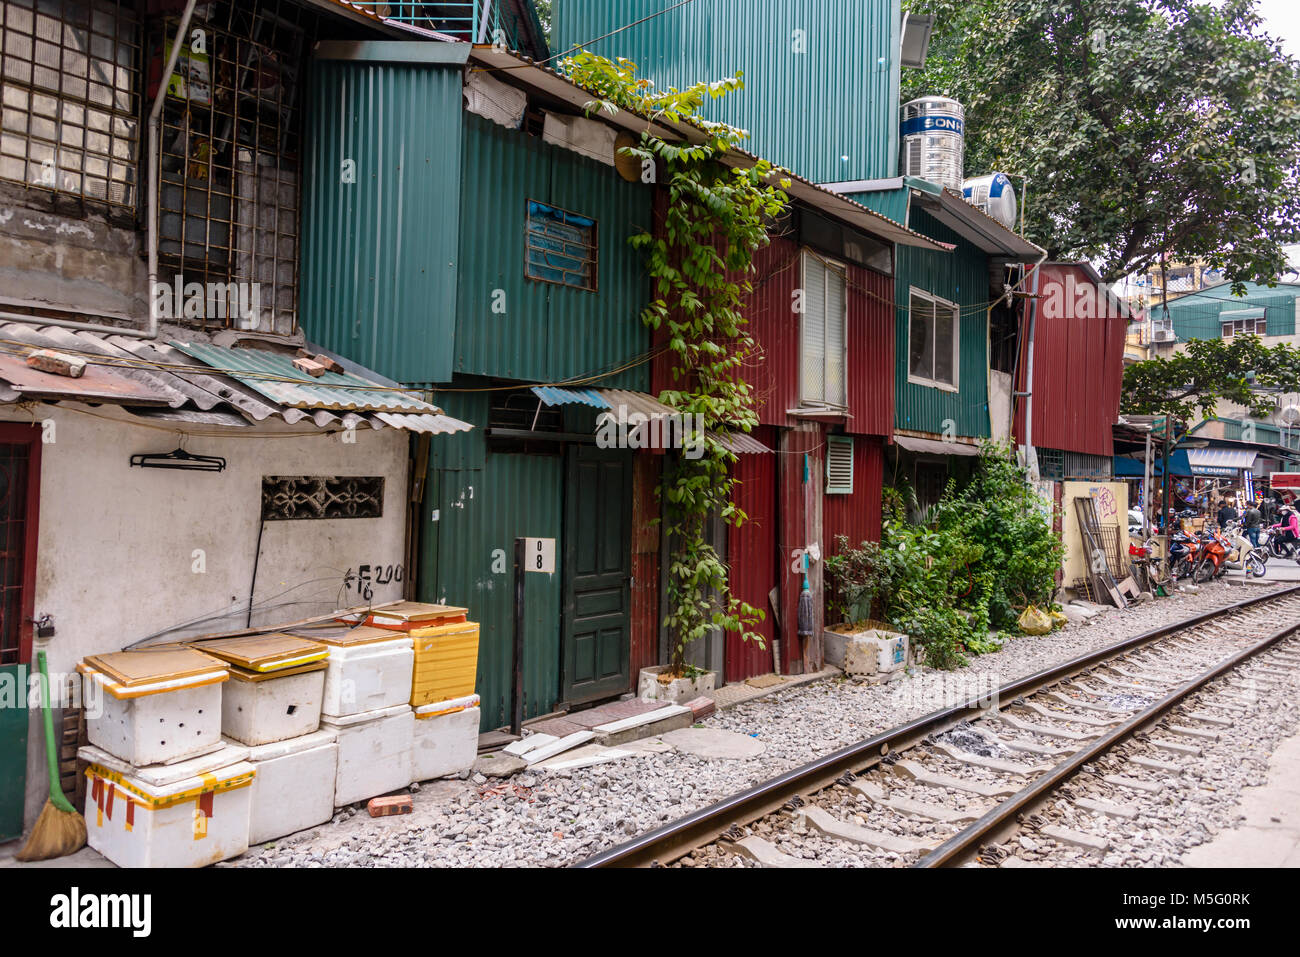 "Hanoi Bahnhof Straße", eine schmale Straße im Zentrum von Hanoi mit live Bahnstrecken, auf denen viele Familien Wohnen, Kochen, Essen und Waschen. Stockfoto